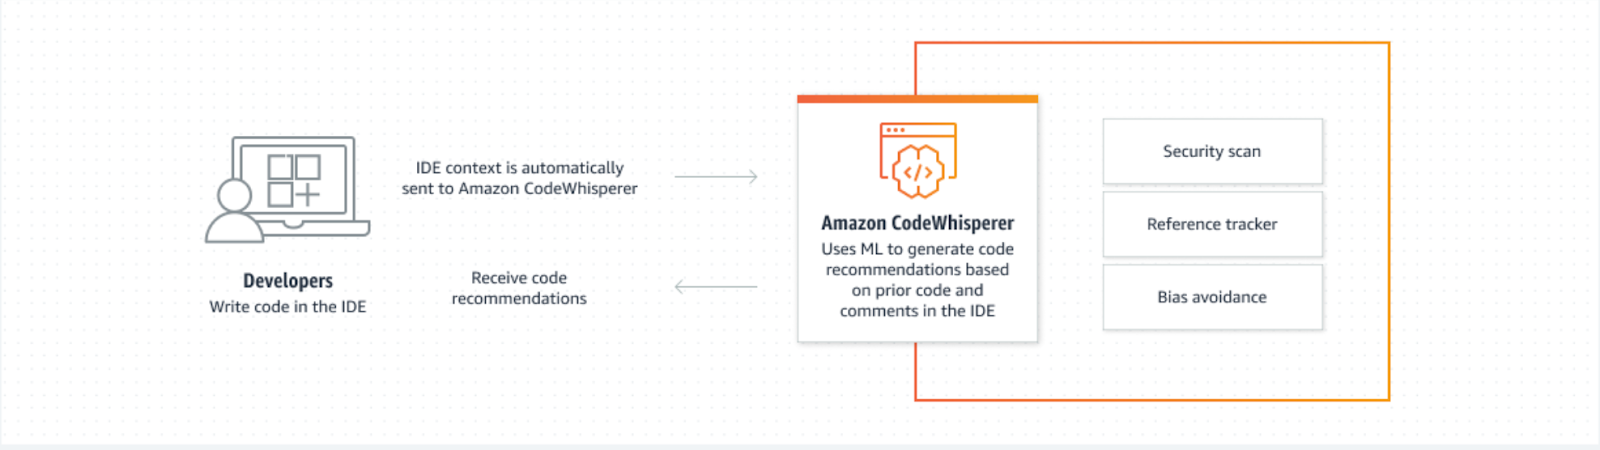 Cơ chế của Amazon CodeWhisperer trong đánh giá code.